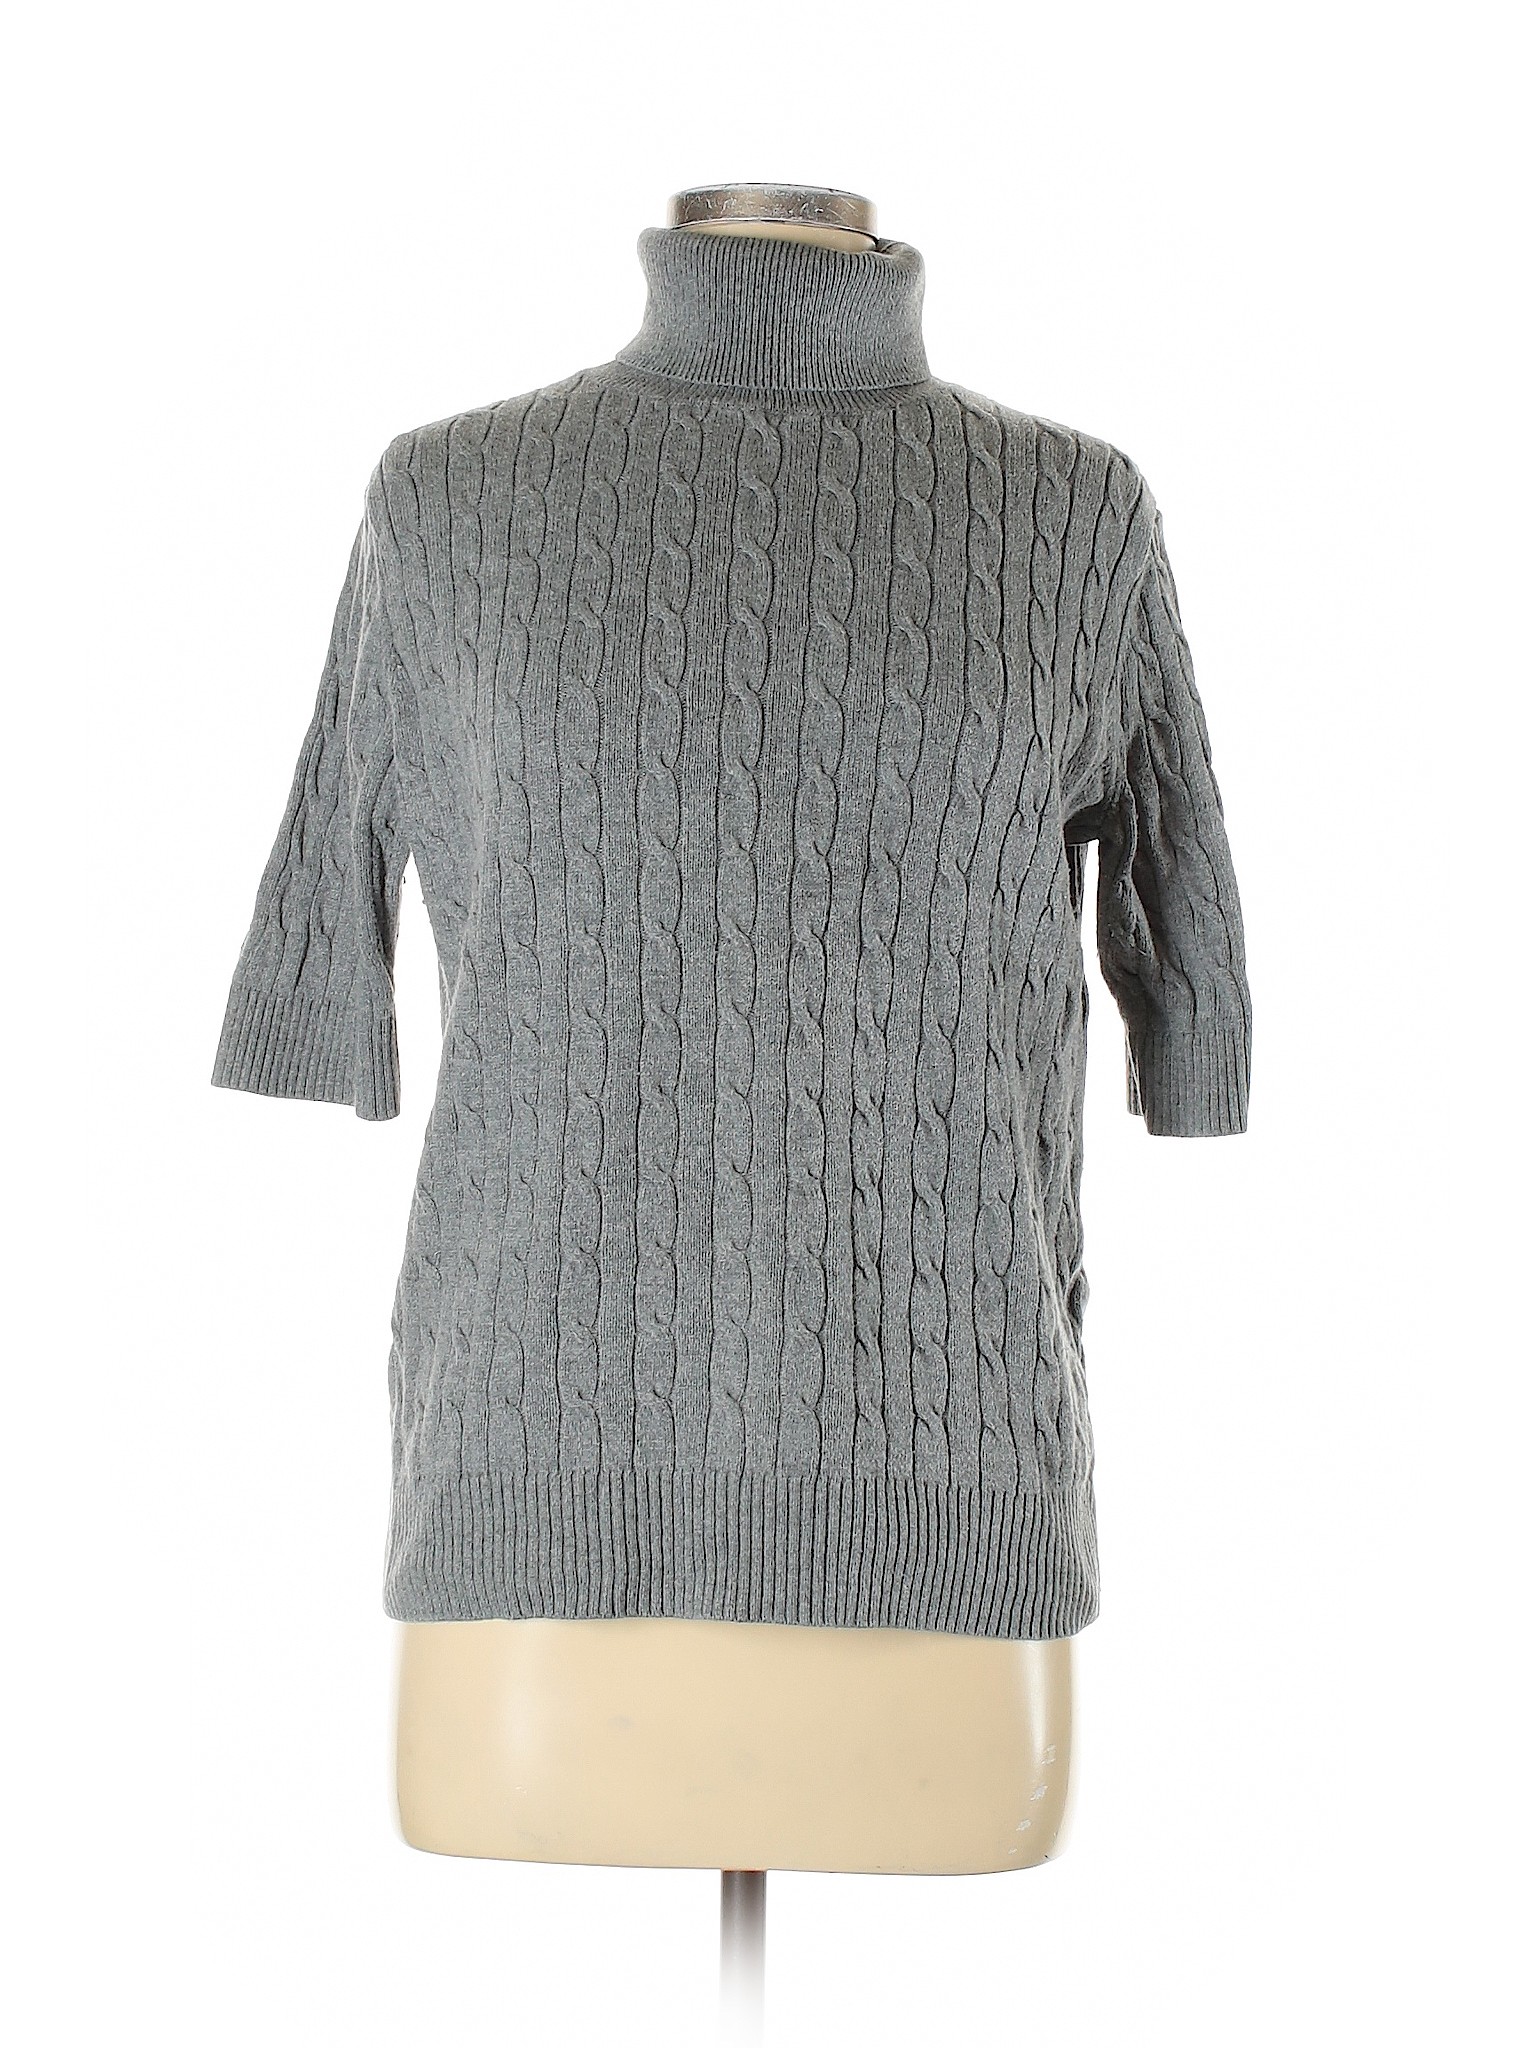 Lands' End Women Gray Turtleneck Sweater M | eBay